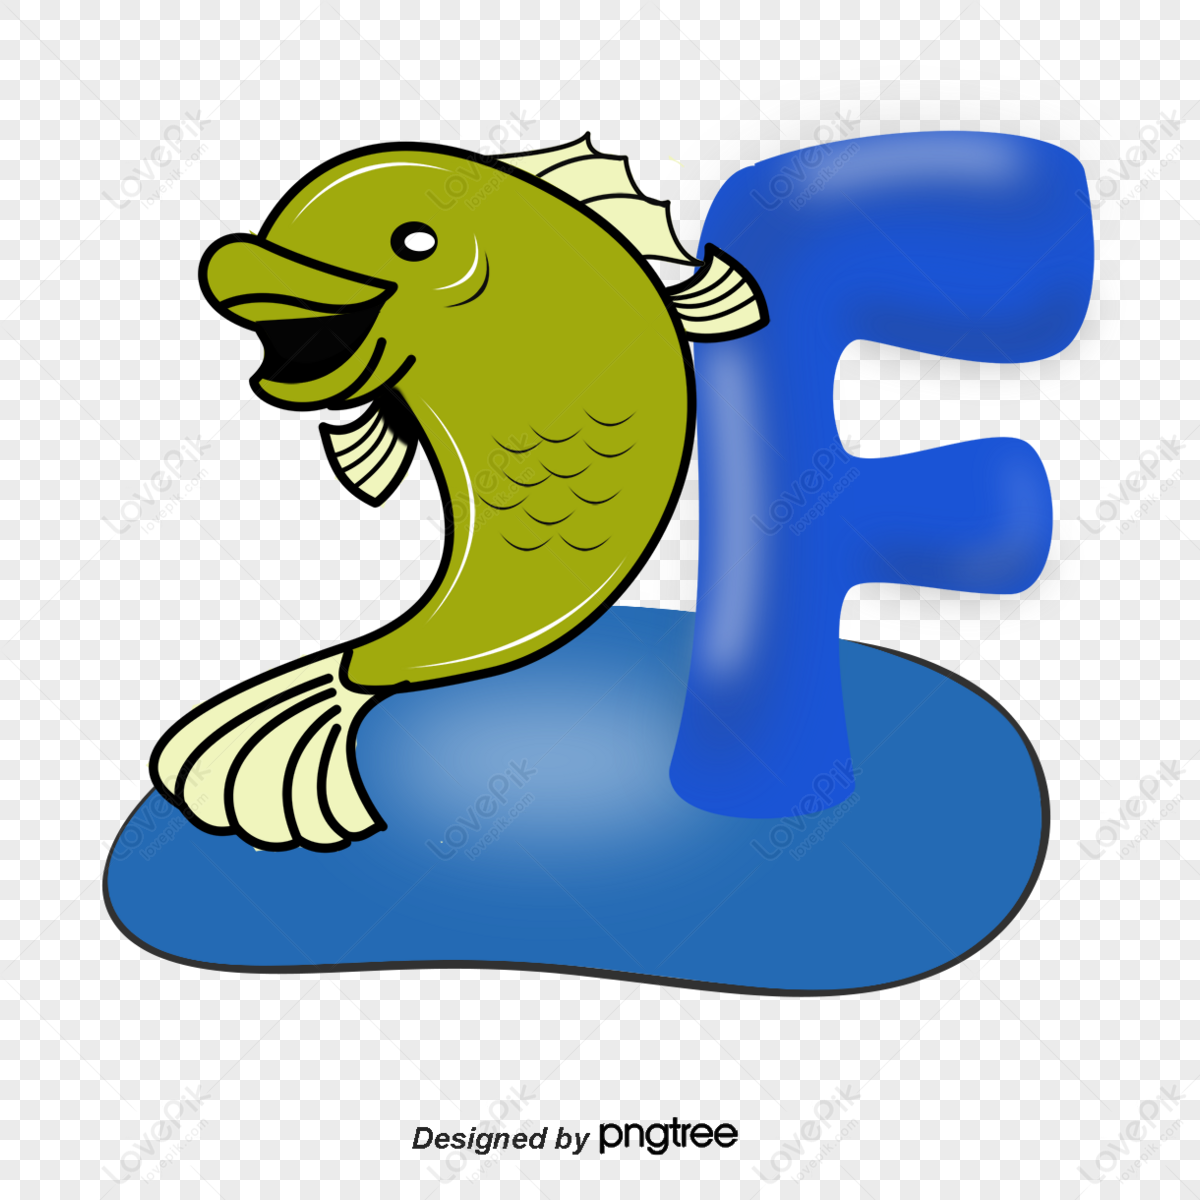 Рыба на букву с. Рыба на букву г. Рыба на букву м. Рыбка из букв.